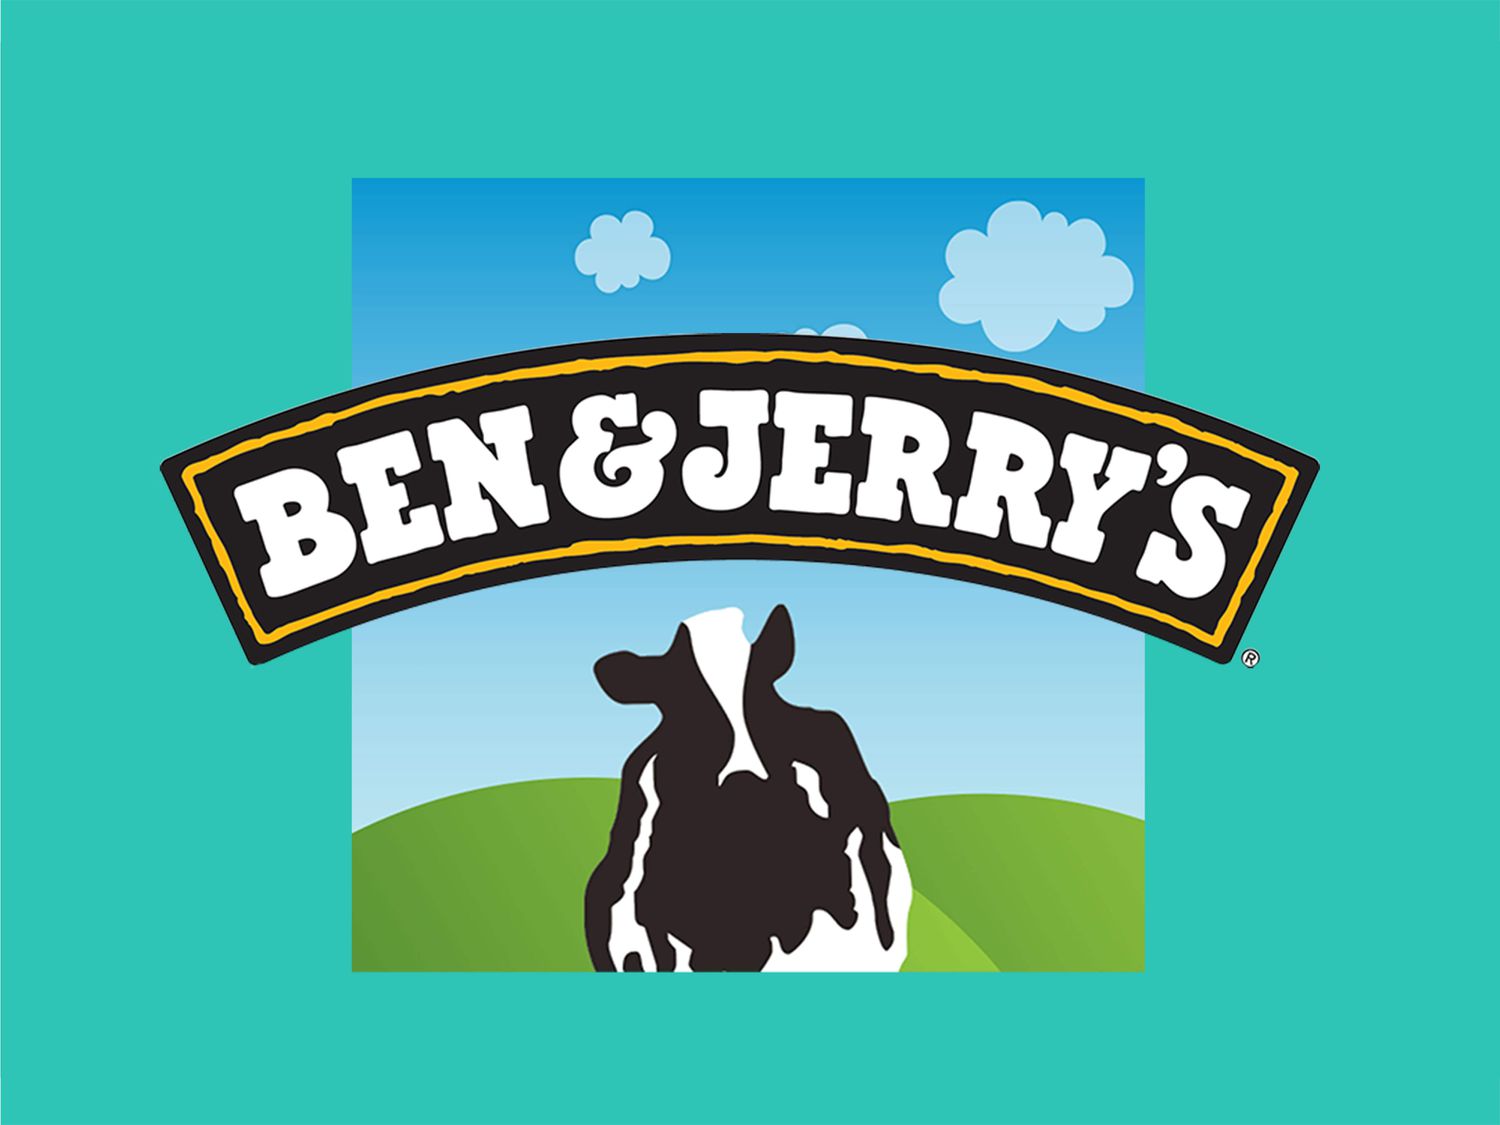 Chia sẻ giá trị thương hiệu thực phẩm bền vững như Ben and Jerry’s.